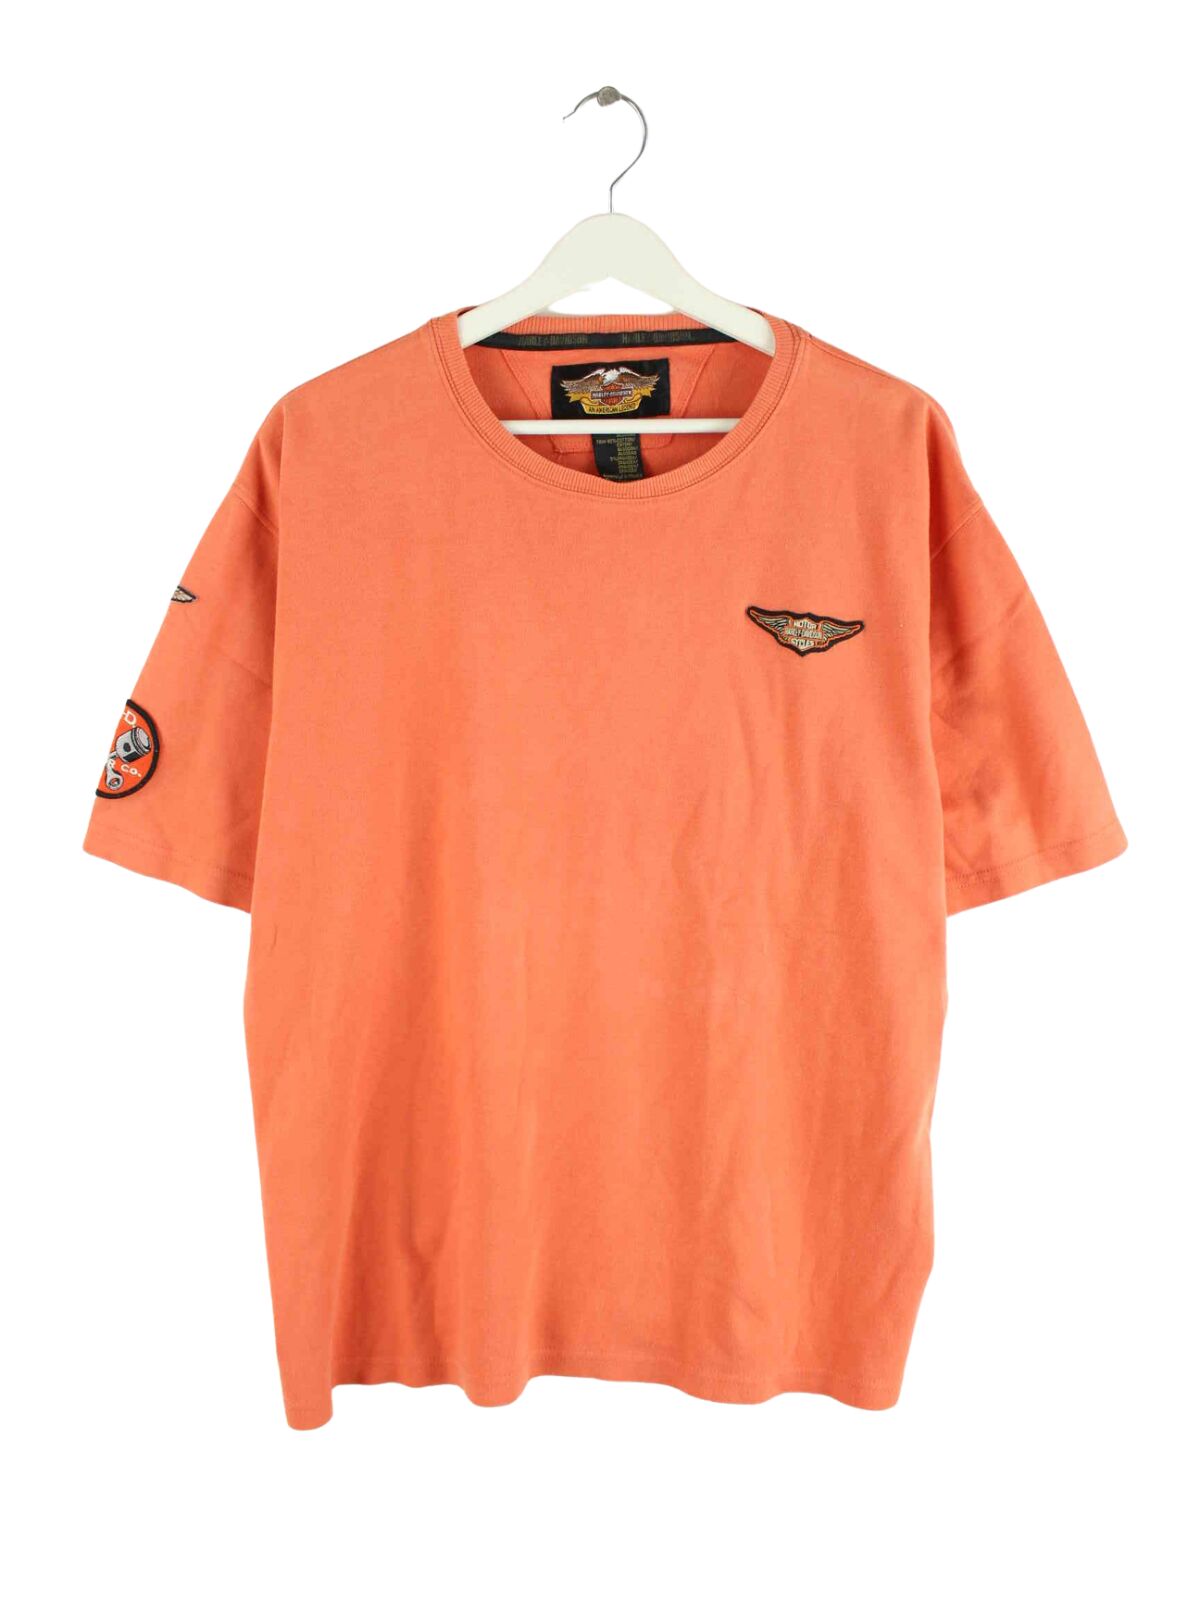 Harley Davidson 90s Vintage Patch T-Shirt Orange L (front image)